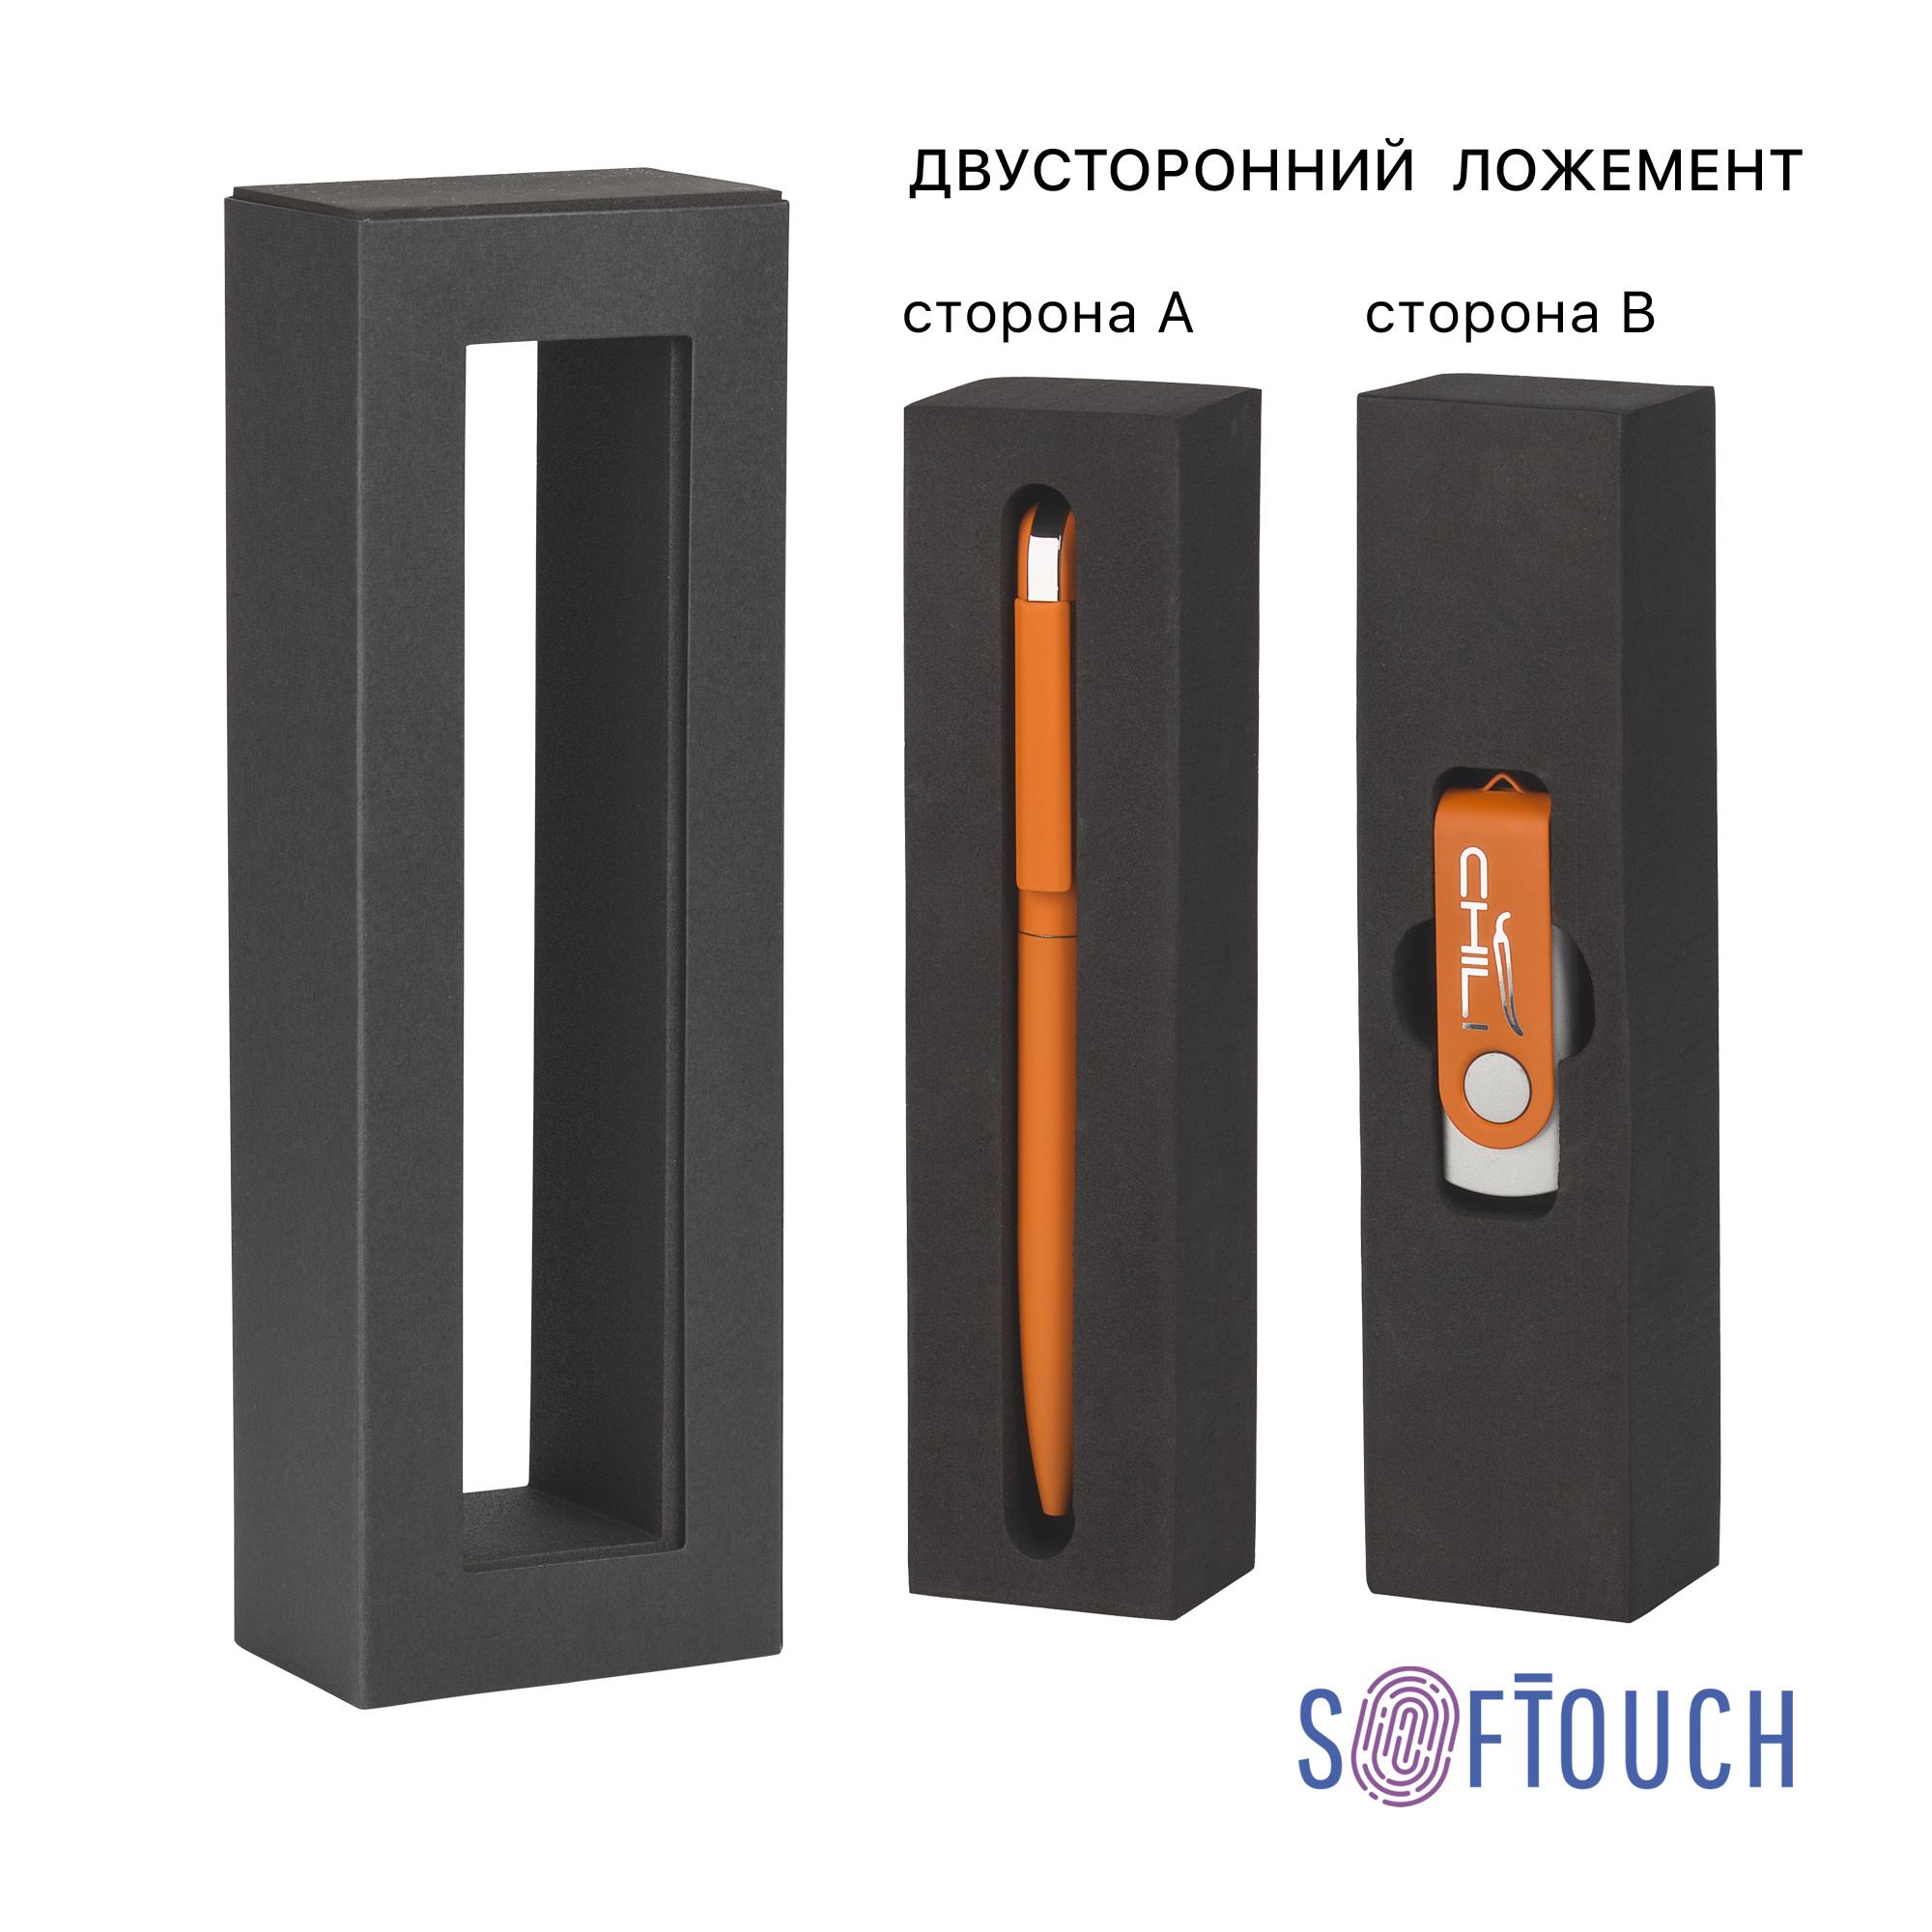 Набор ручка "Jupiter" + флеш-карта "Vostok" 8 Гб в футляре, покрытие soft touch#, цвет оранжевый, фото 3